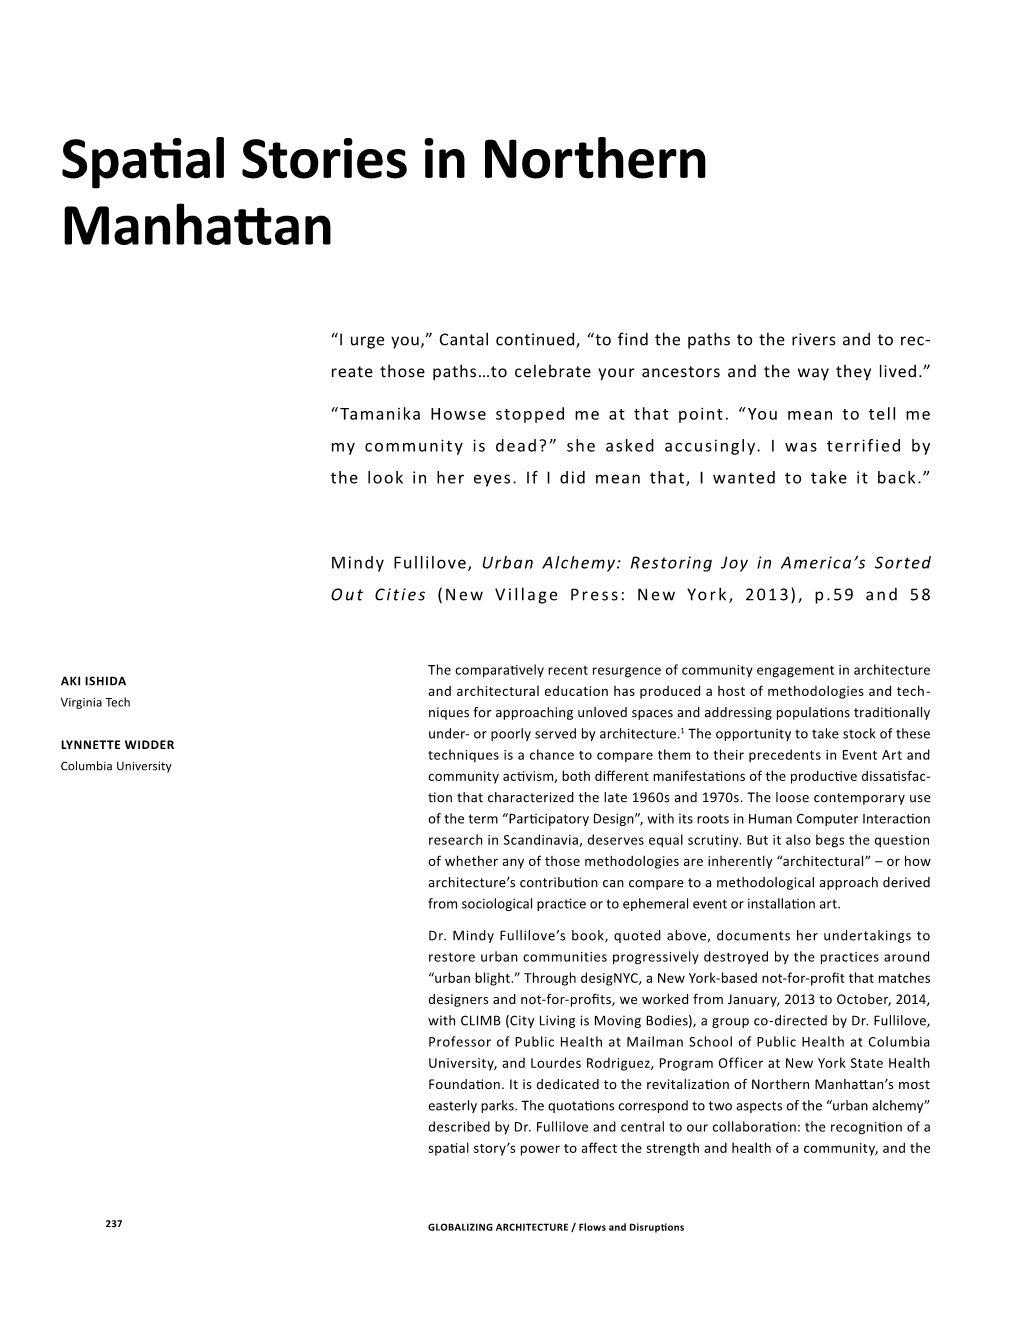 Spatial Stories in Northern Manhattan